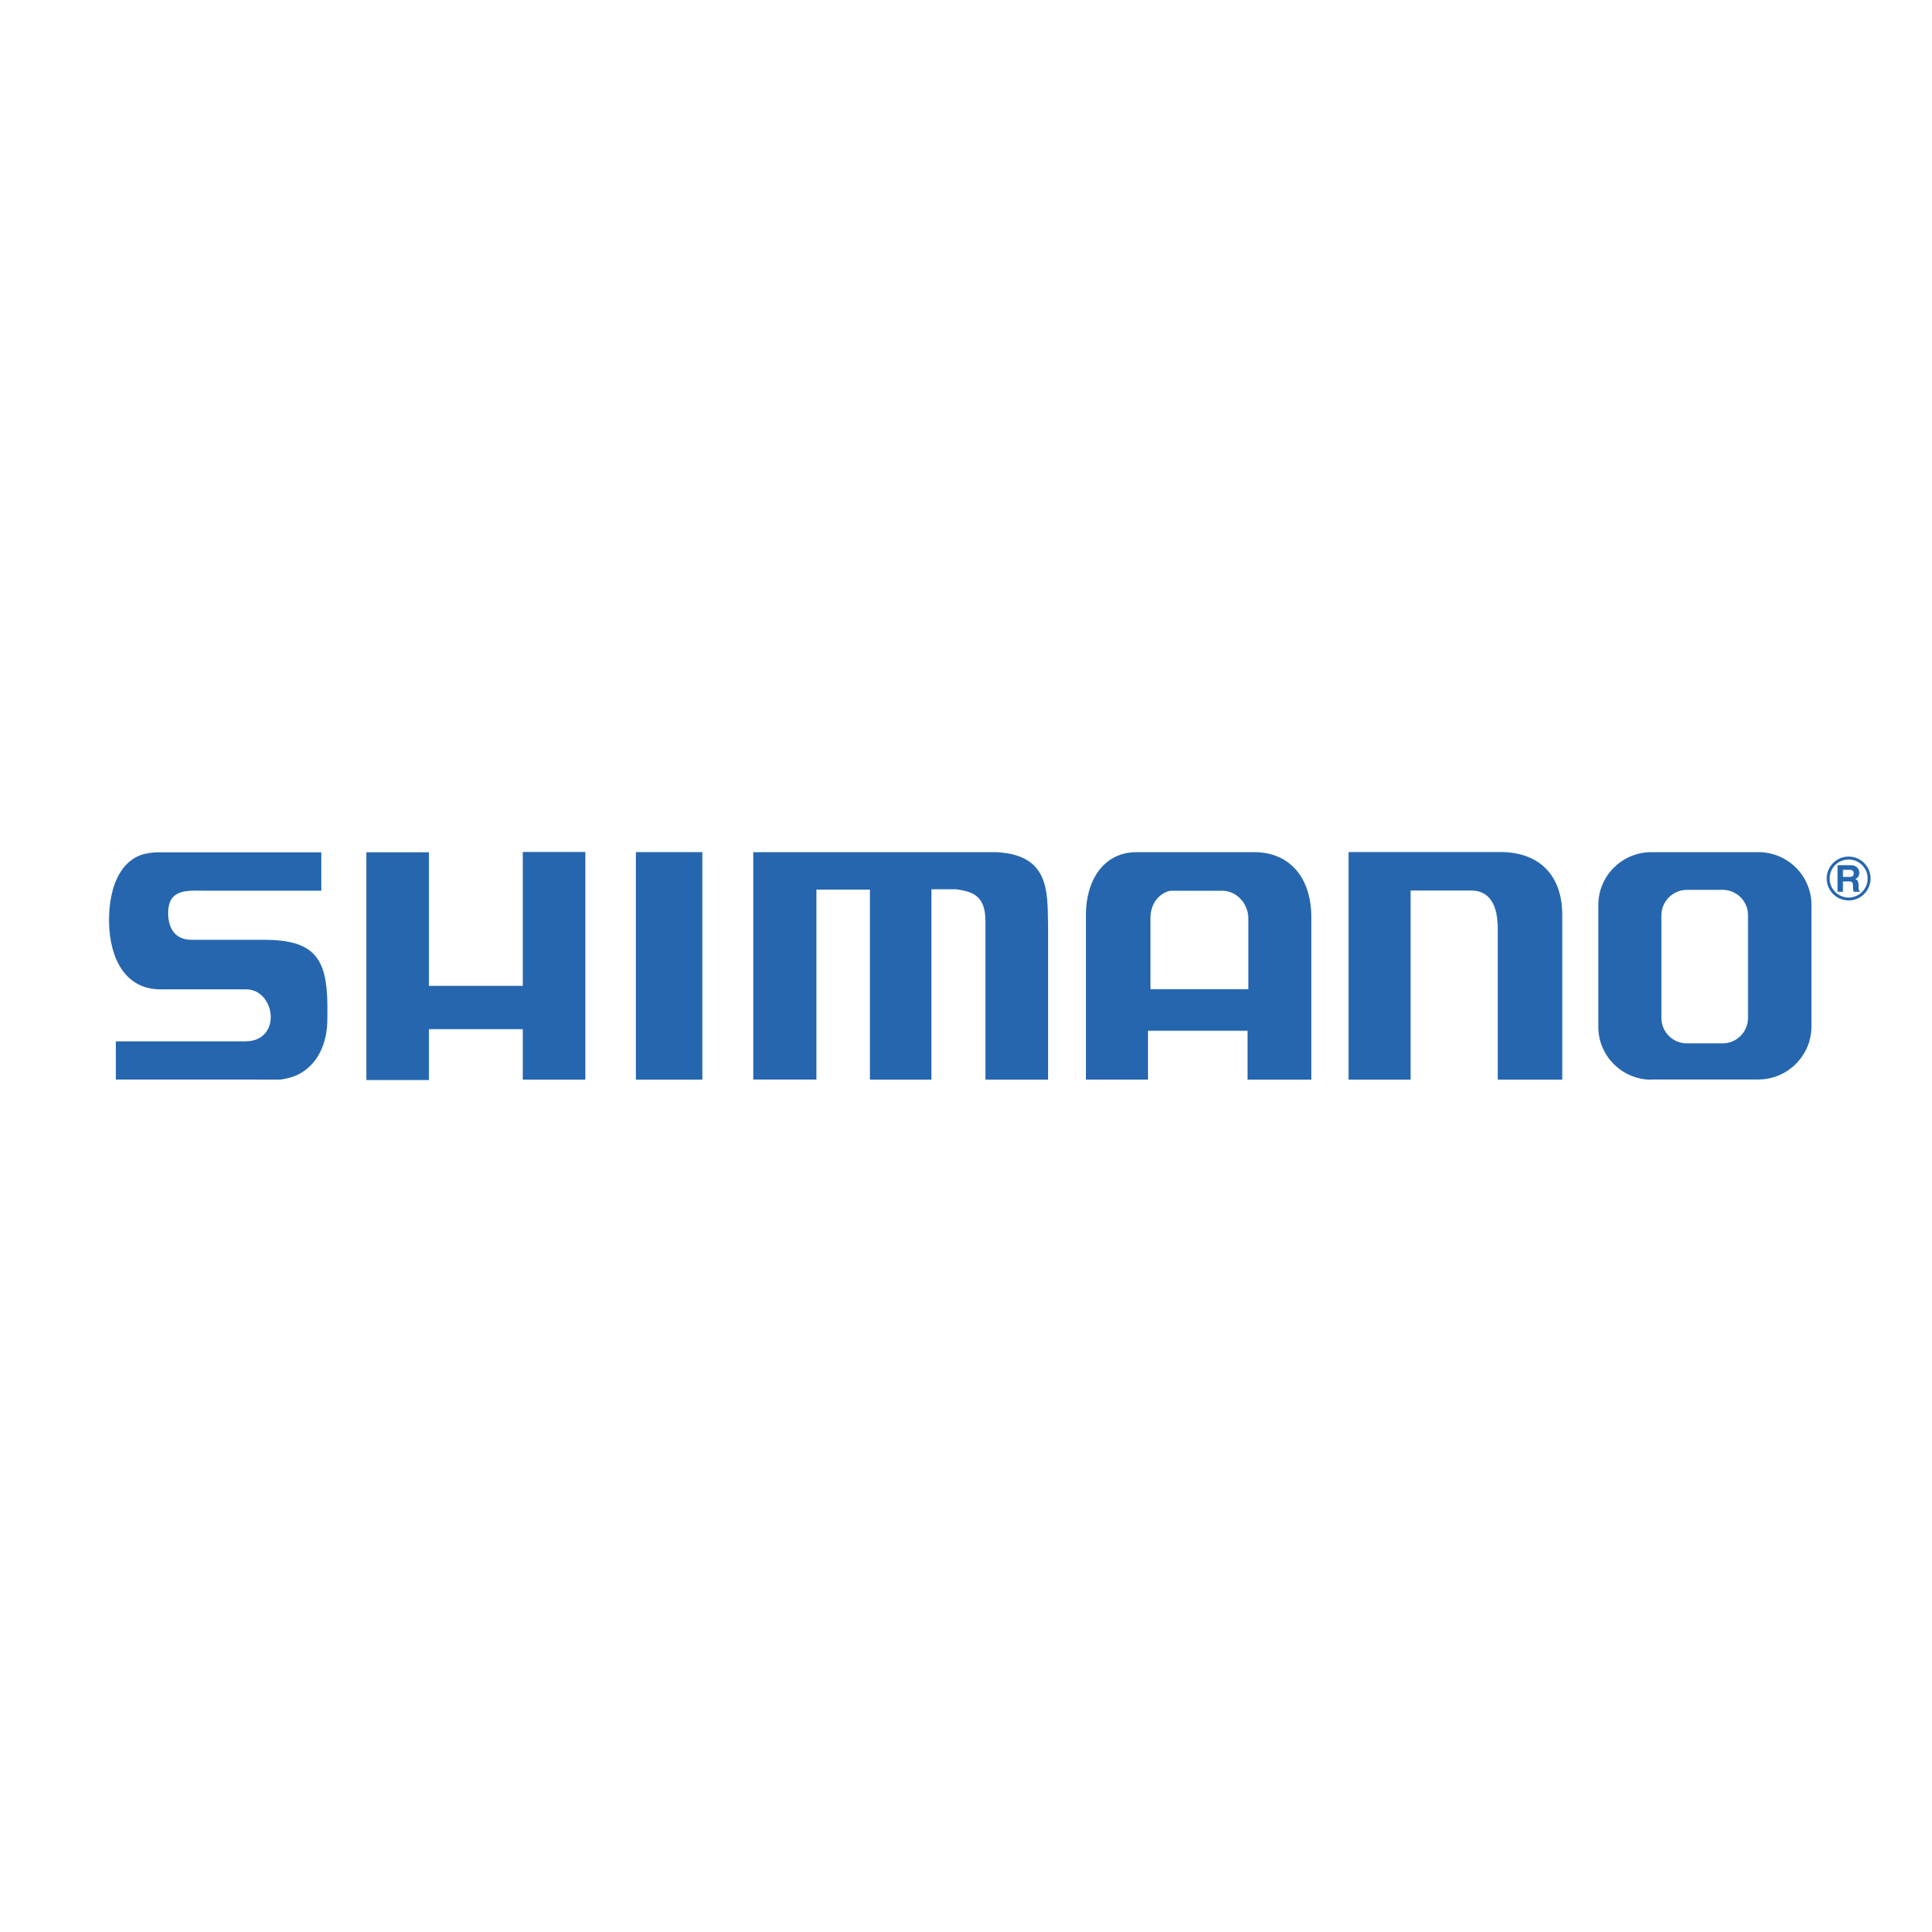 shimano-logo-png-transparent.png